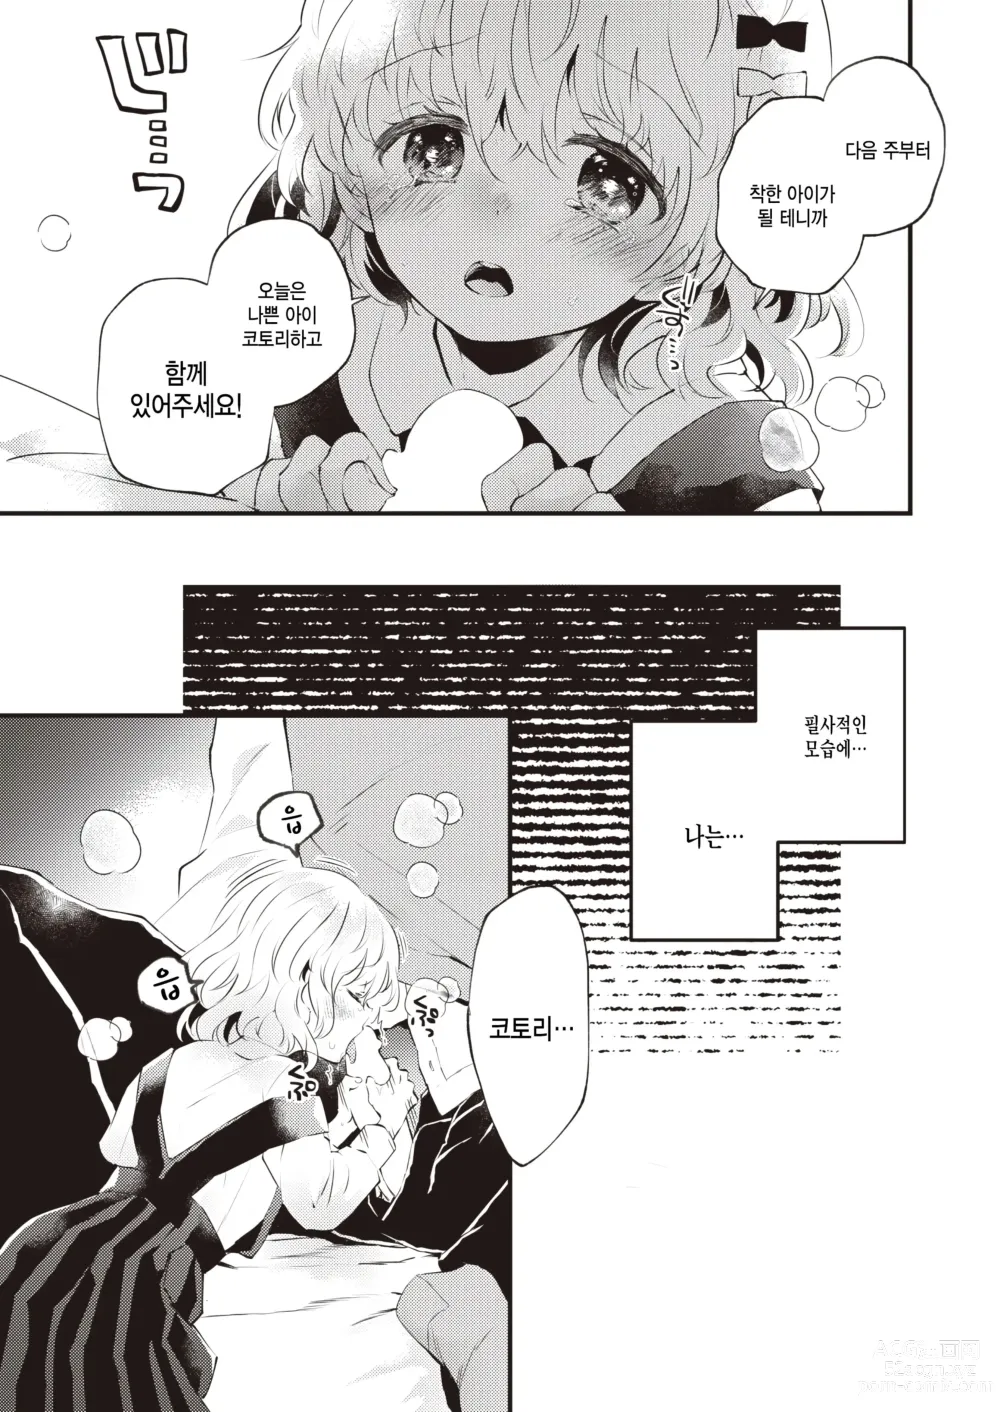 Page 7 of manga Kedamono Michi